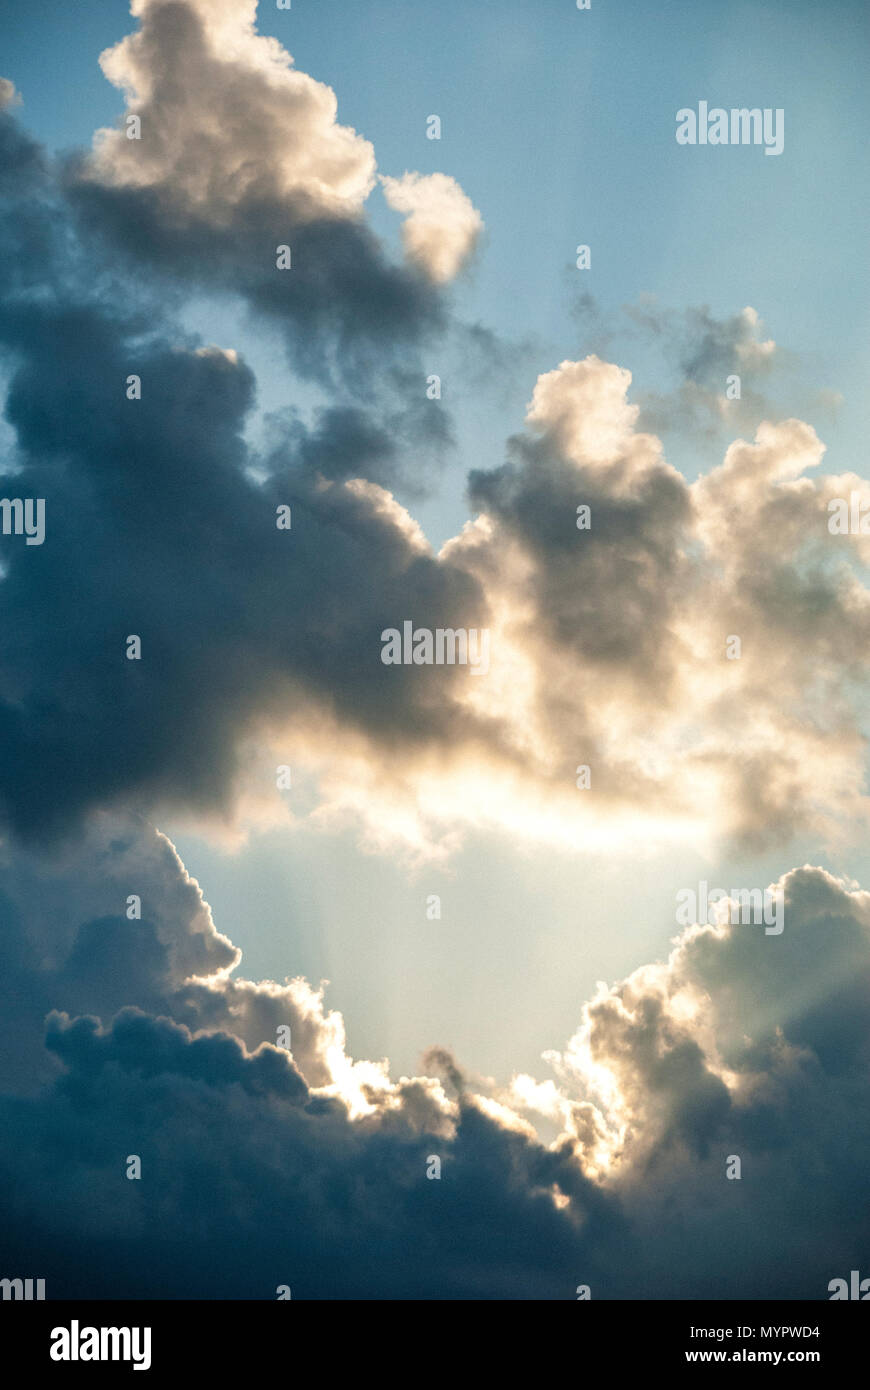 Ilumina el agujero en las nubes Foto de stock